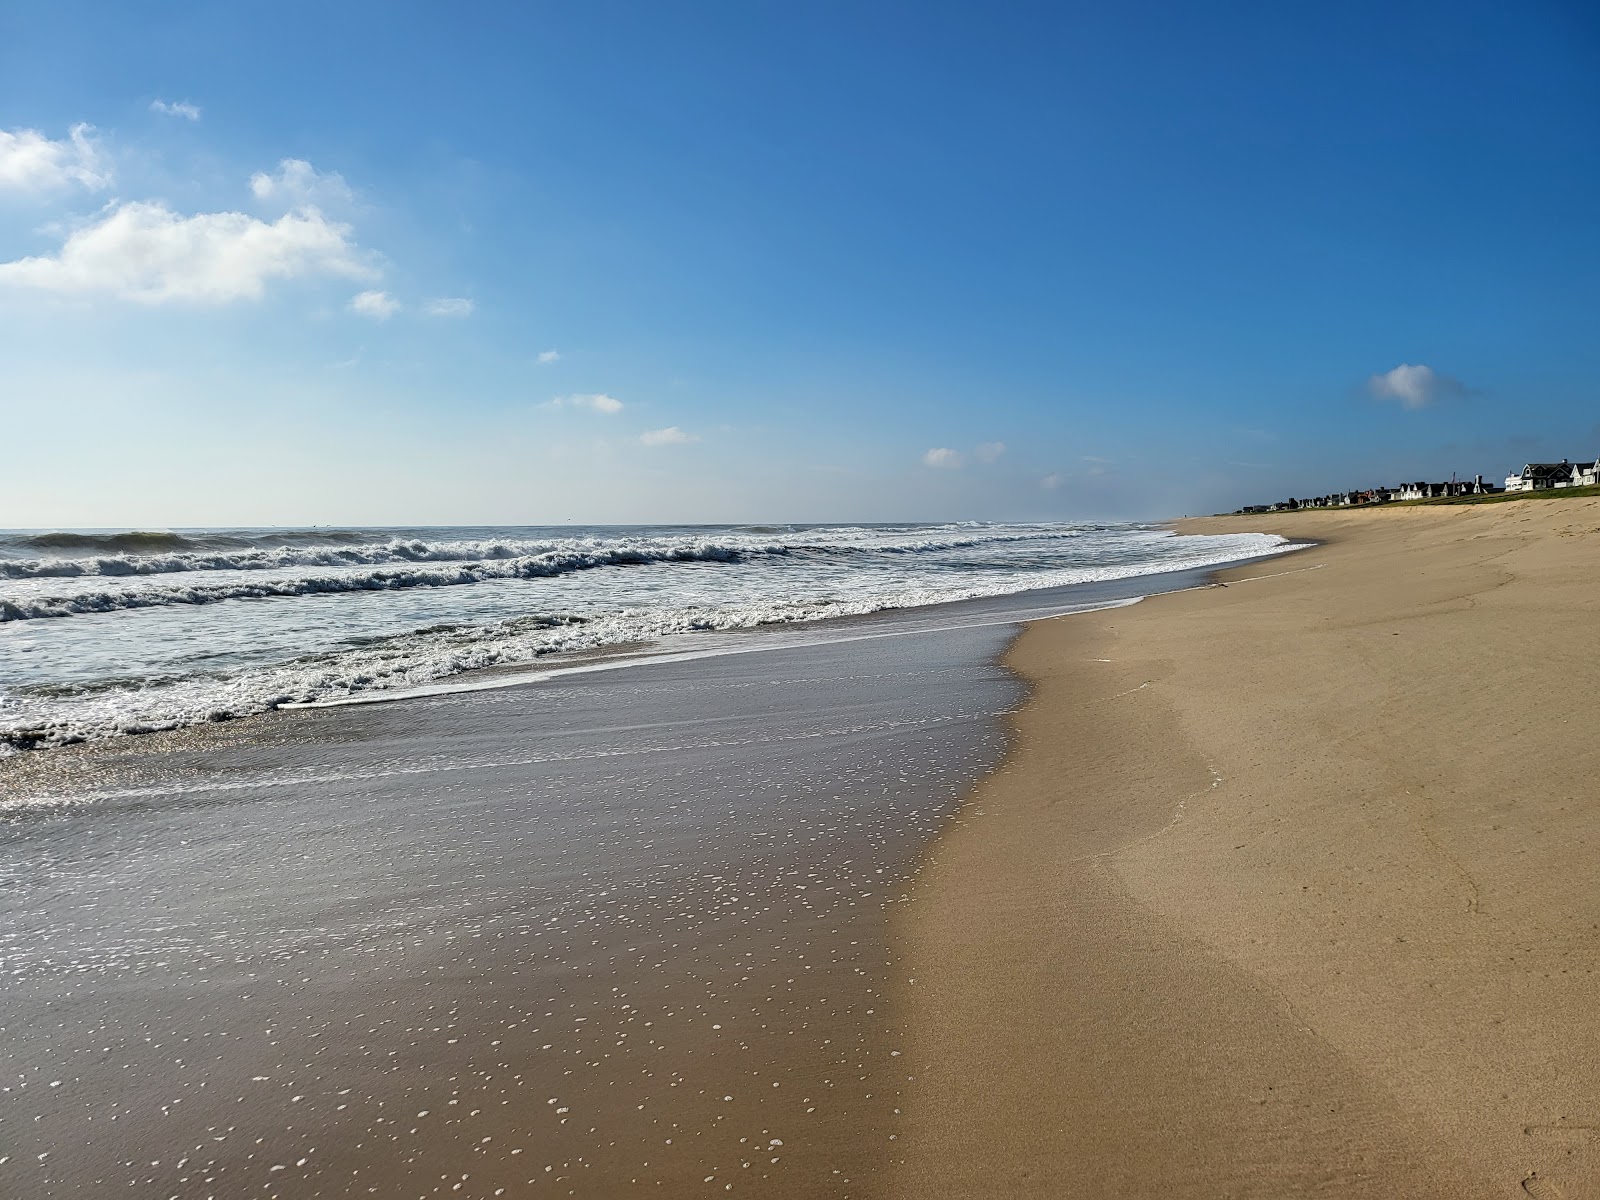 Zdjęcie Lyman Str. Beach z powierzchnią turkusowa czysta woda